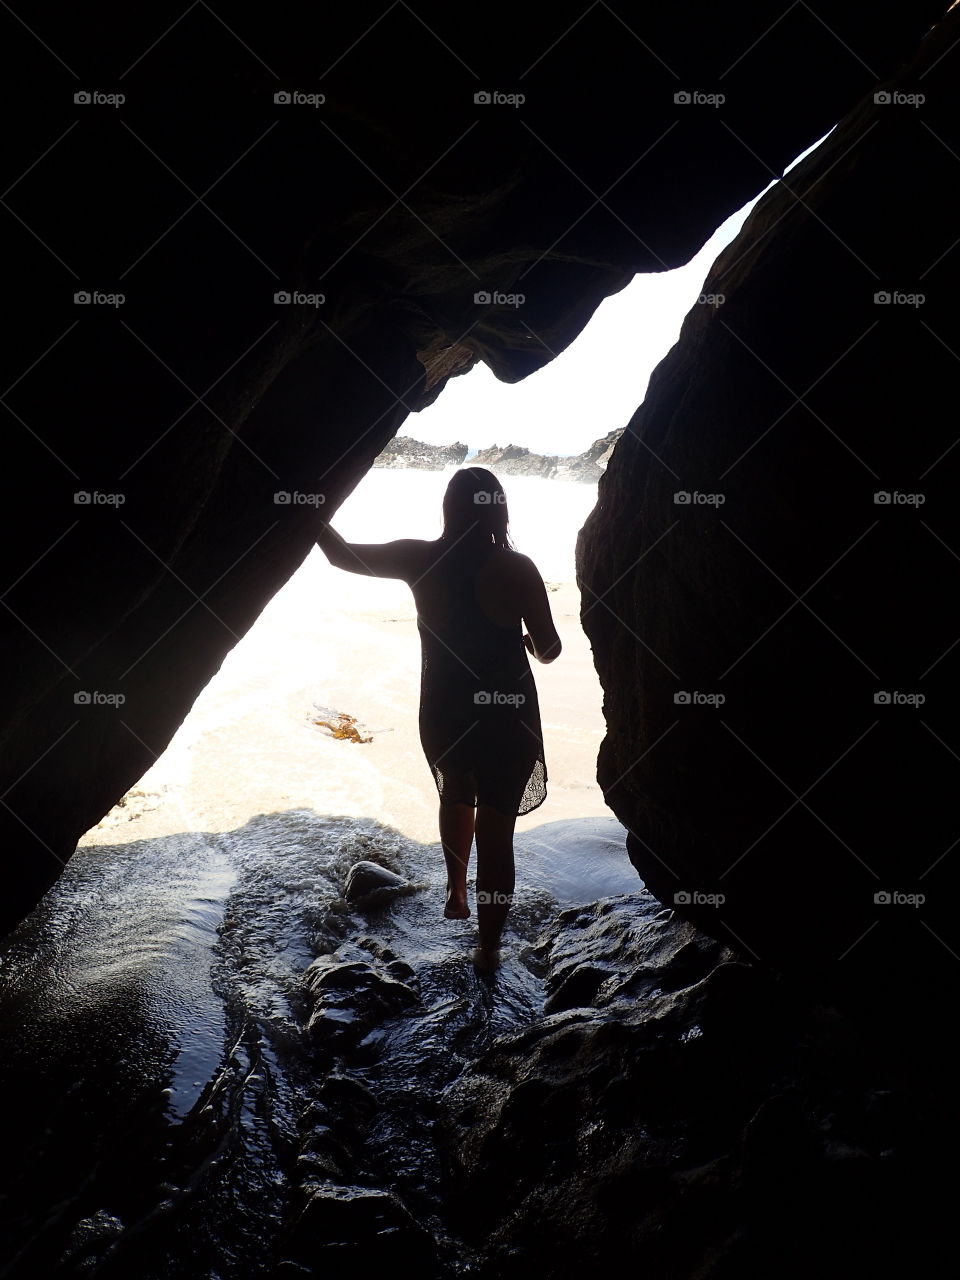 exiting a cave at Laguna beach